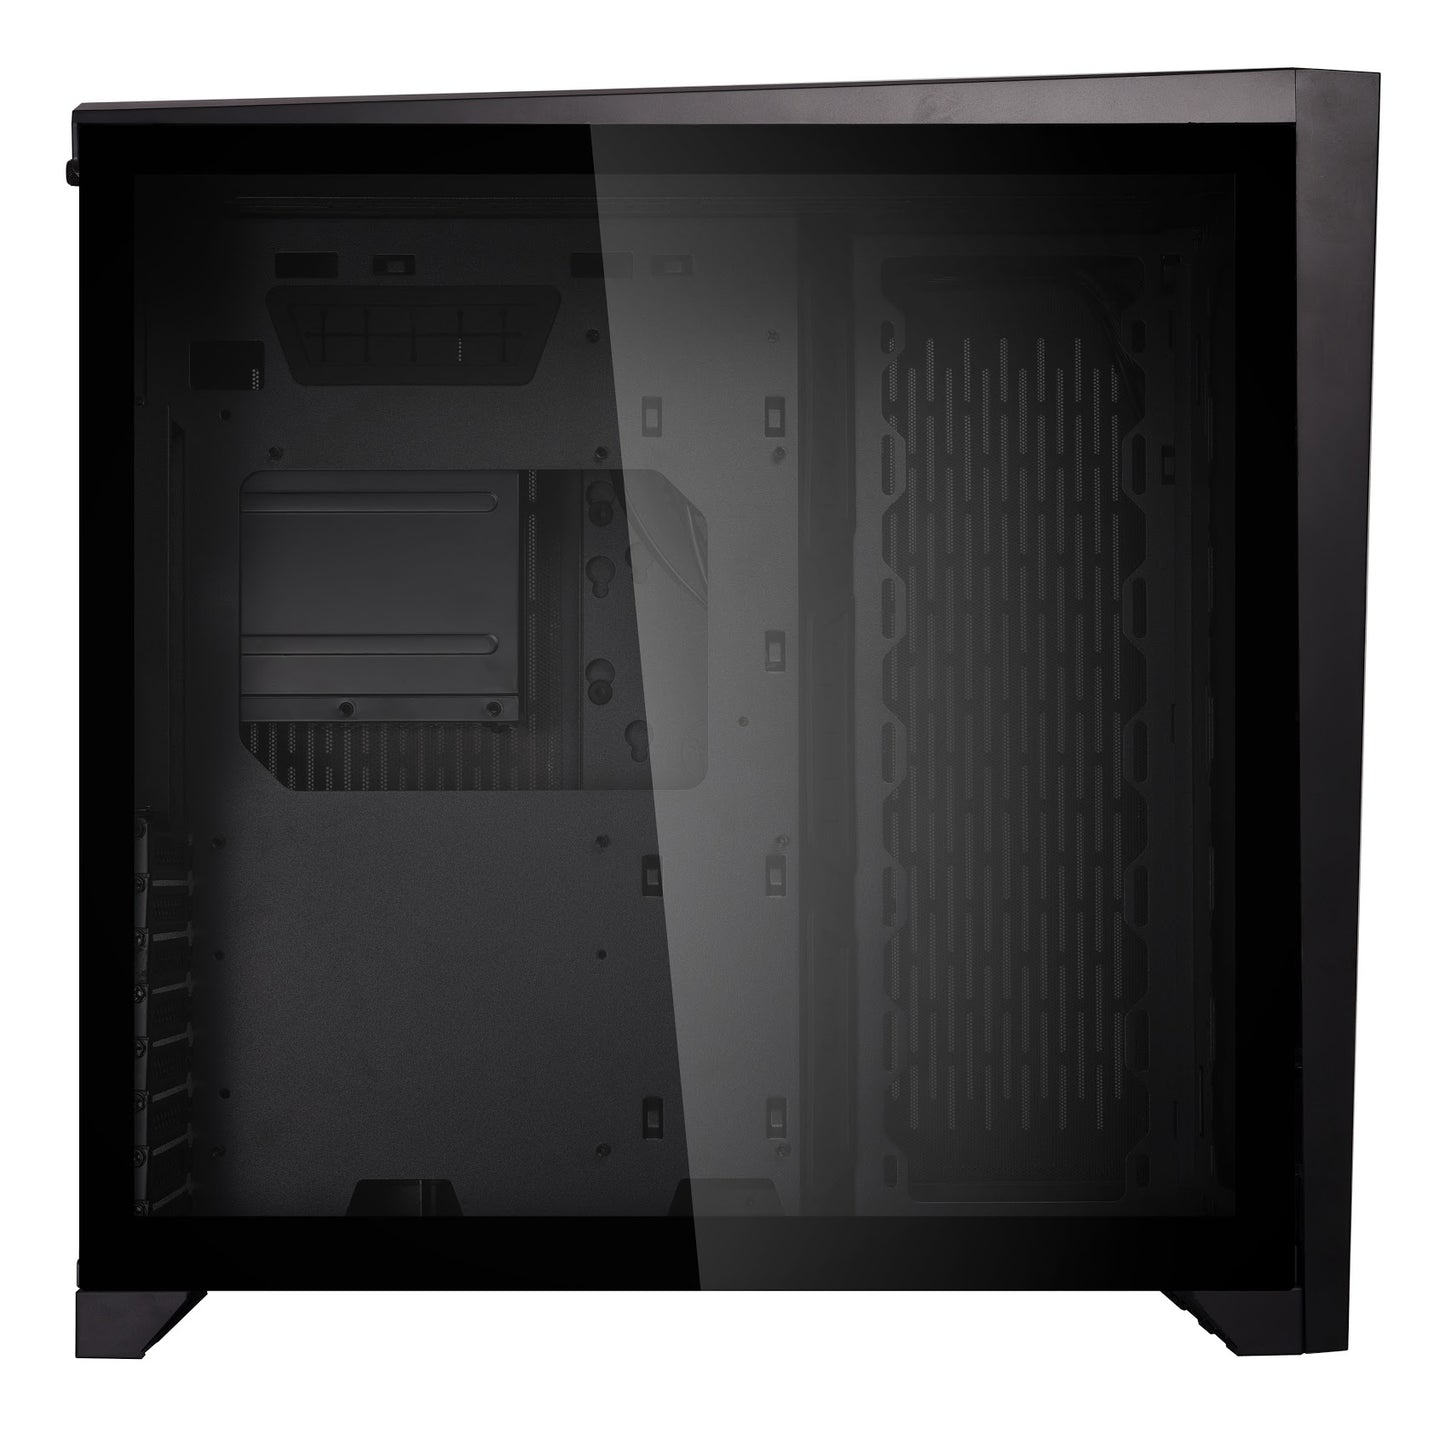 LIAN LI PC-O11 Air Case